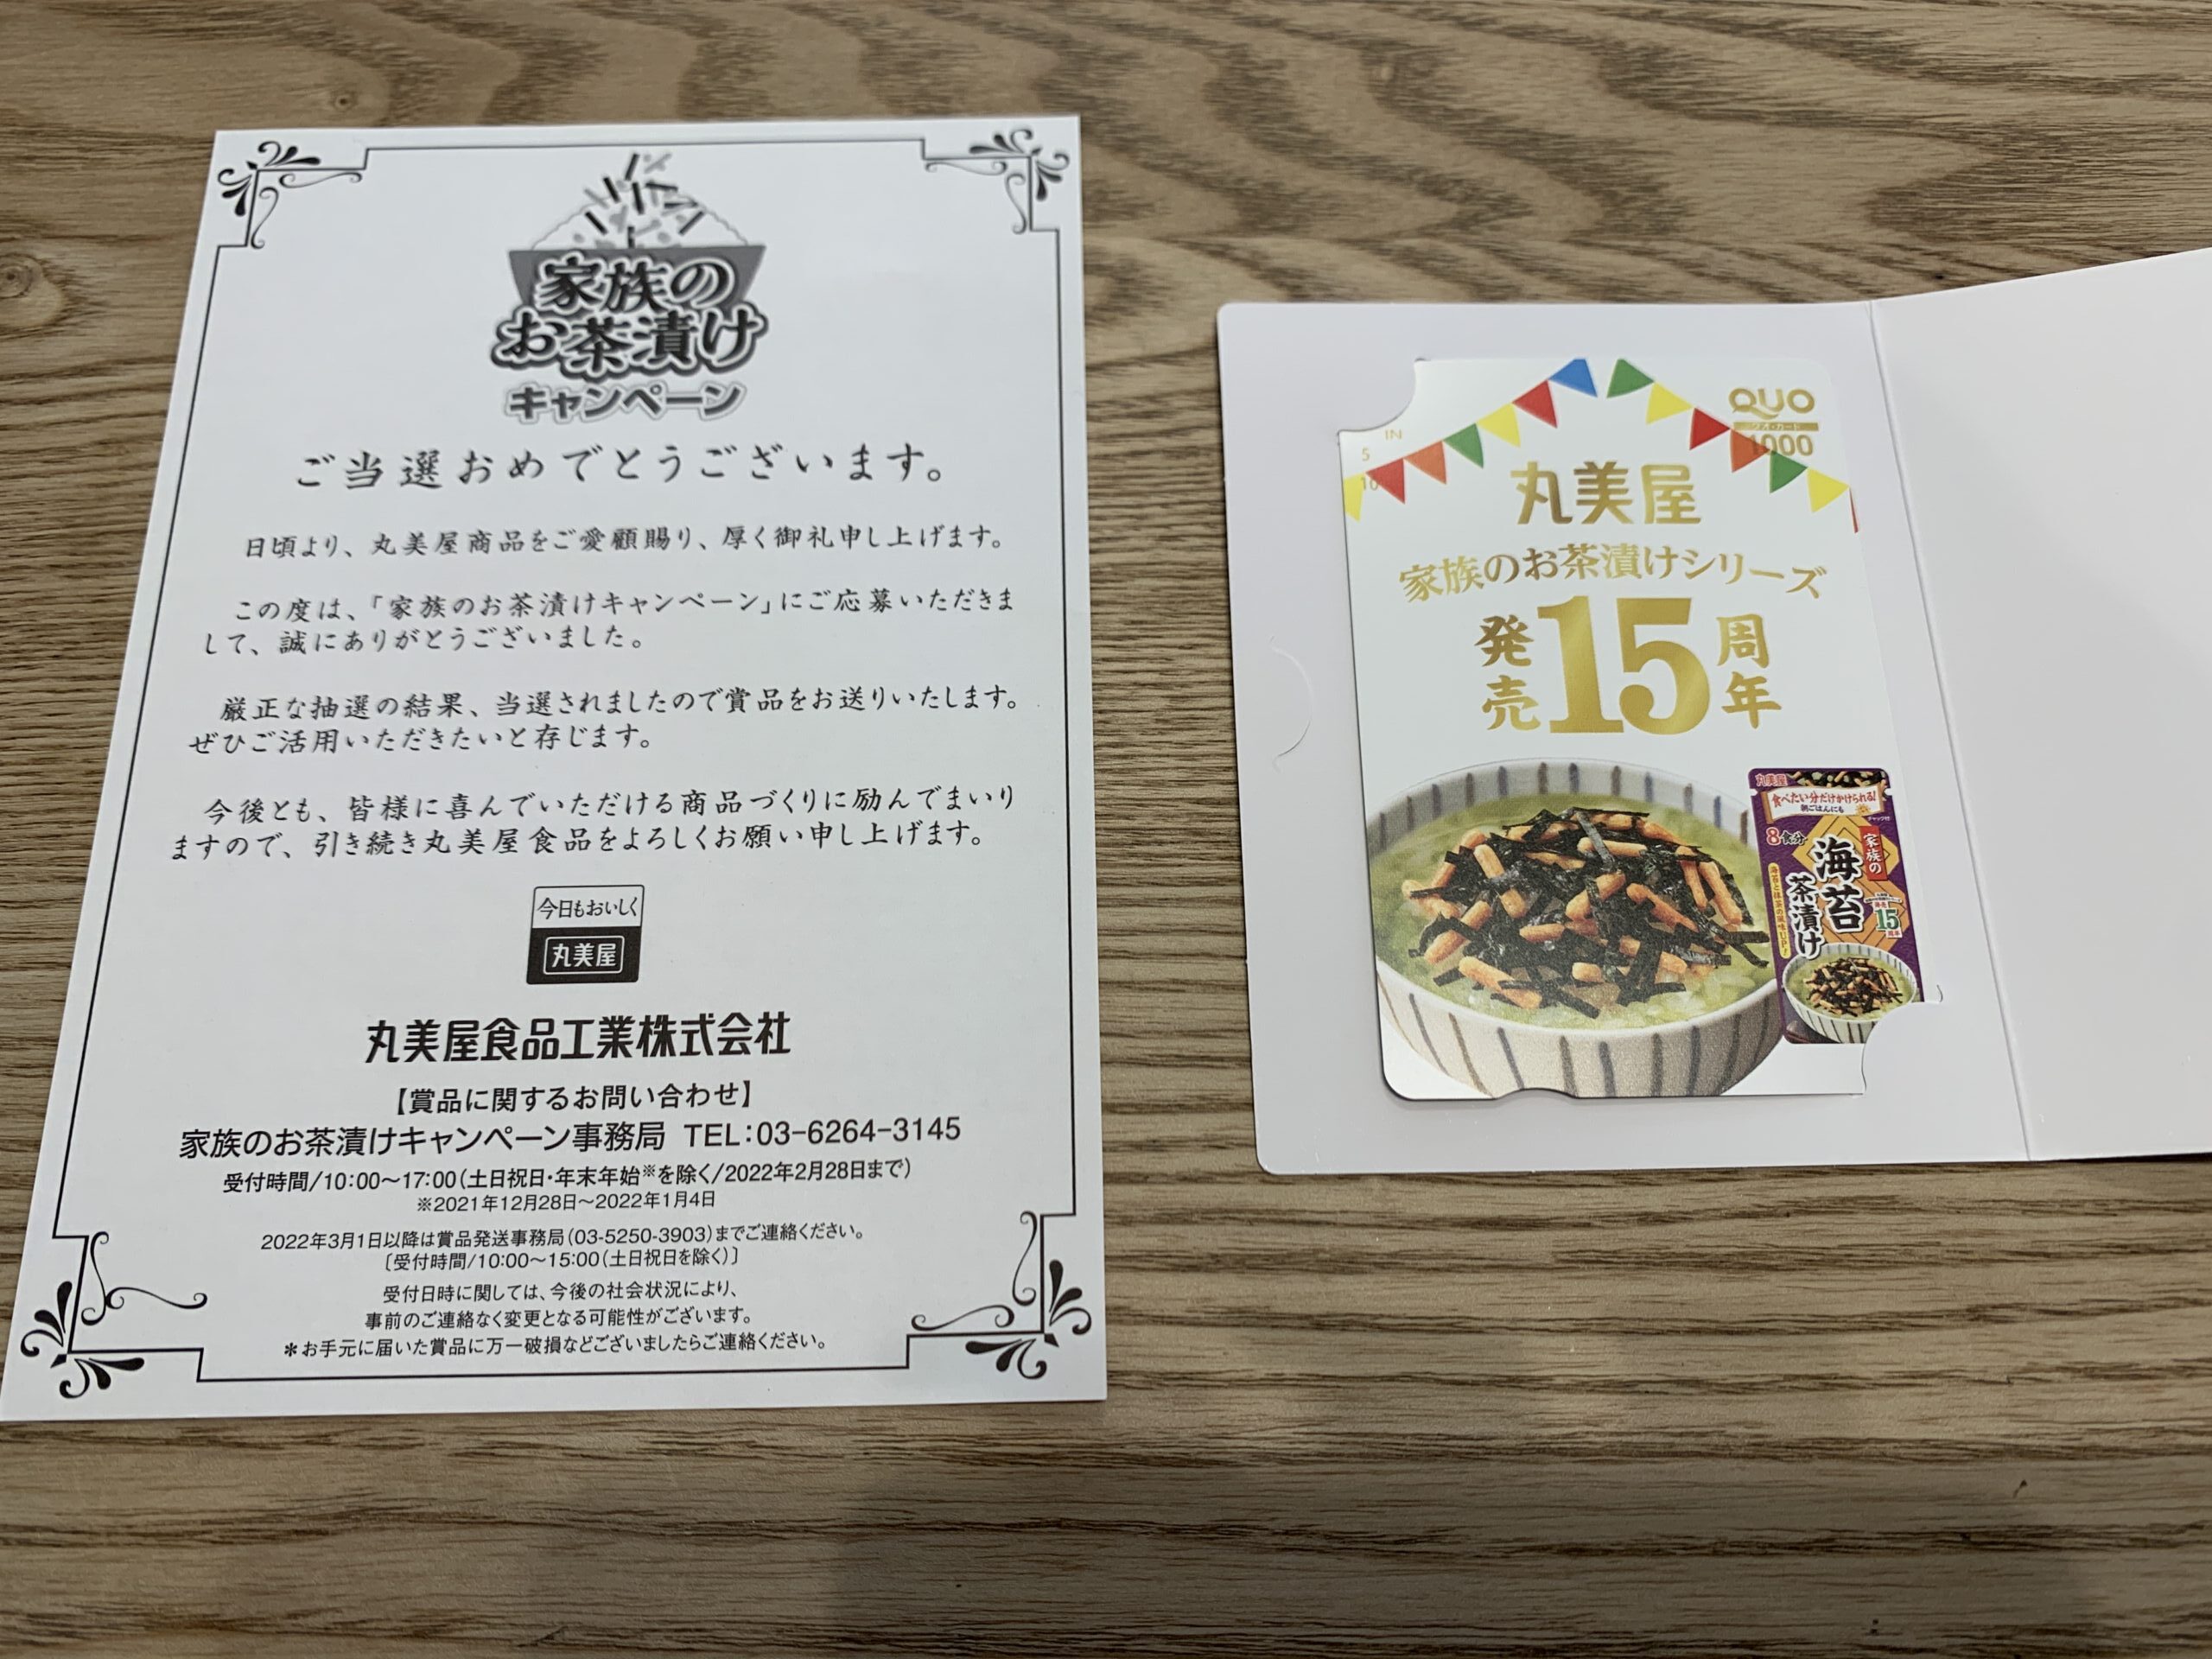 当選報告】丸美屋のキャンペーンで「QUOカード1,000円分」が当選しま ...